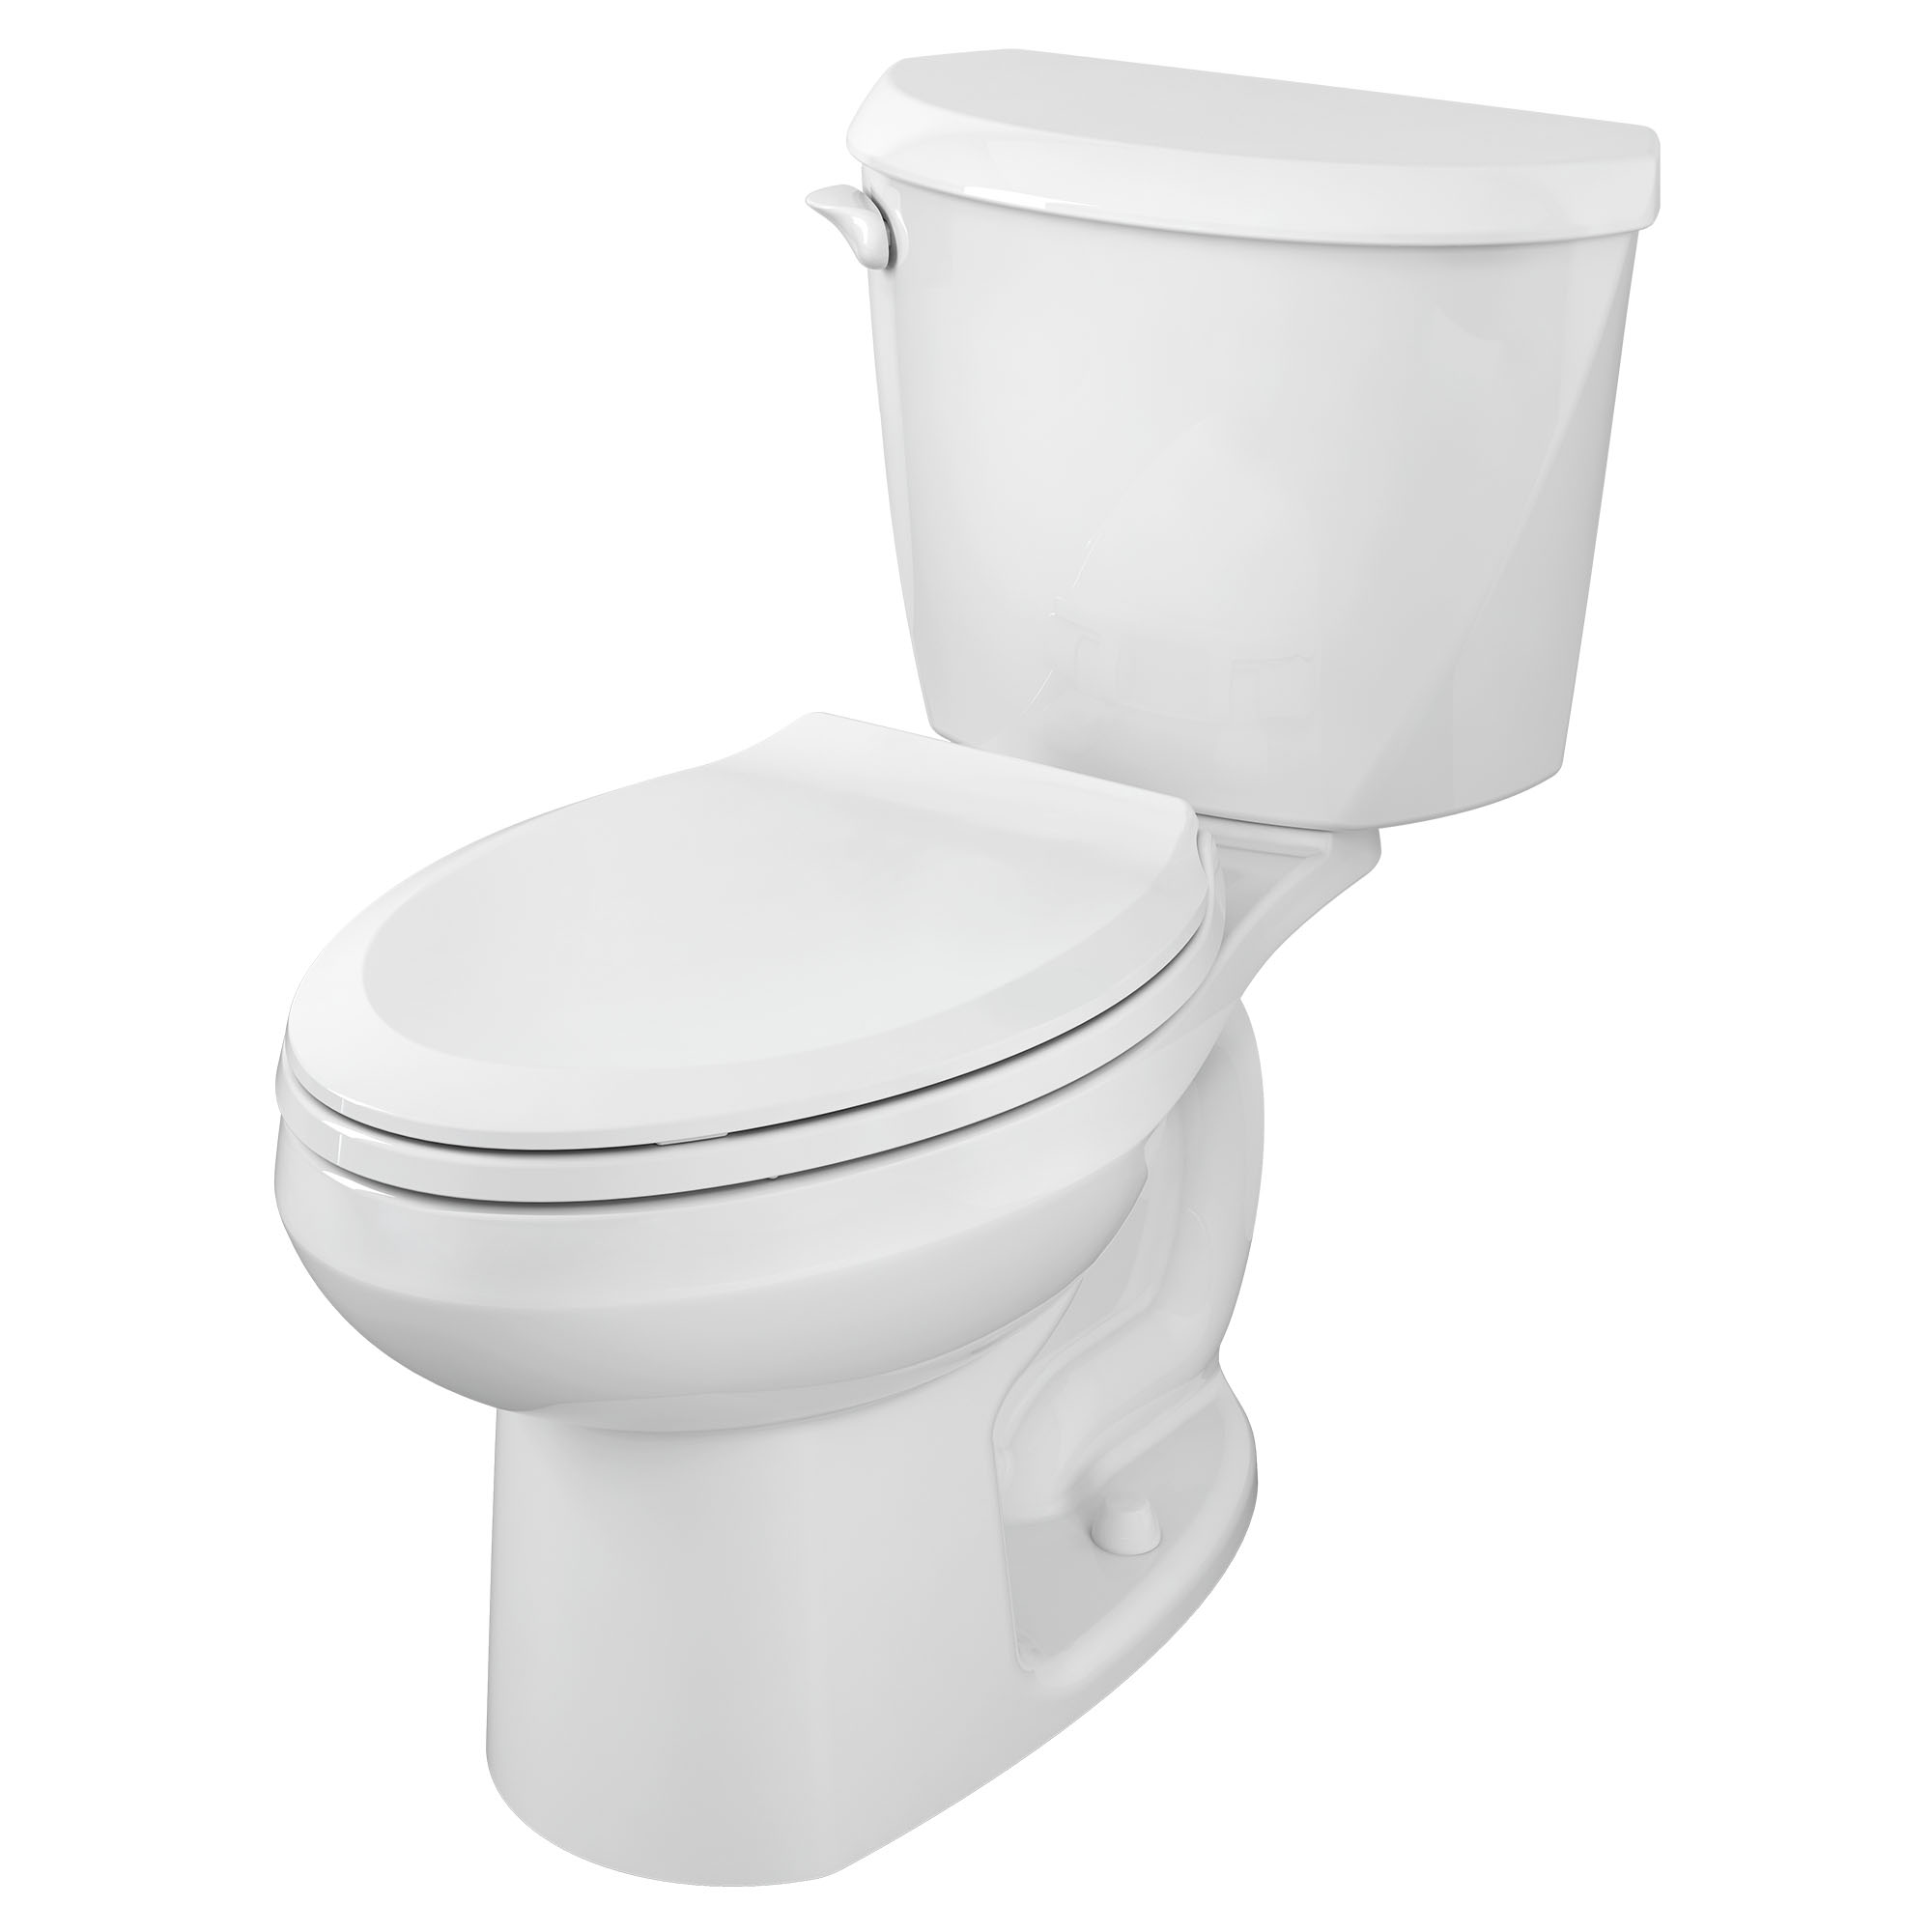 Toilette Colony, 2 pièces, 1,28 gpc/4,8 lpc, à cuvette allongée à hauteur régulière, sans siège